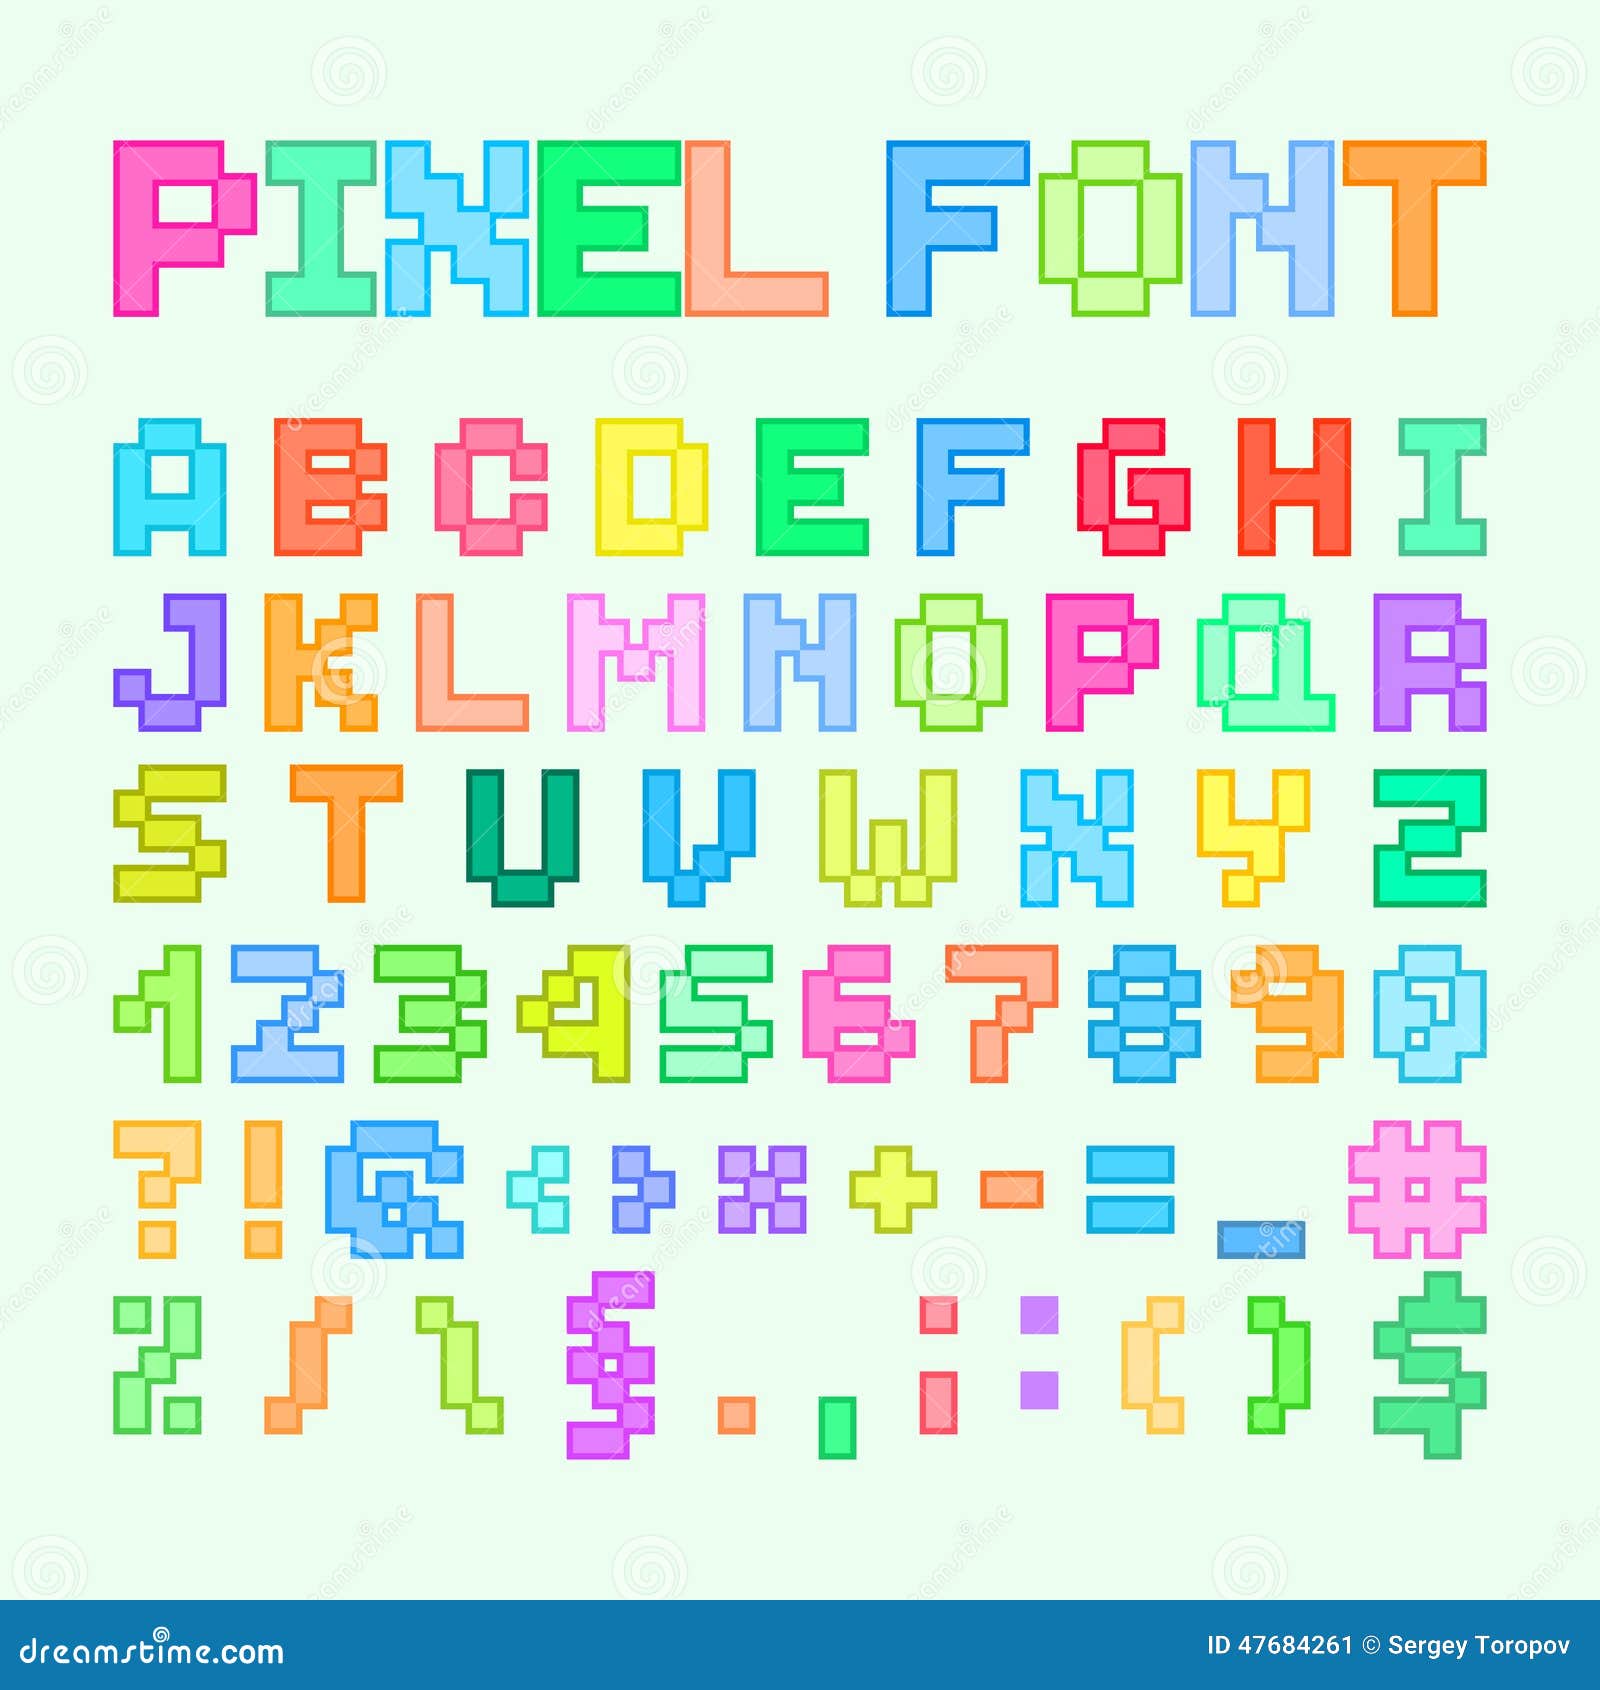 pixel art alphabet